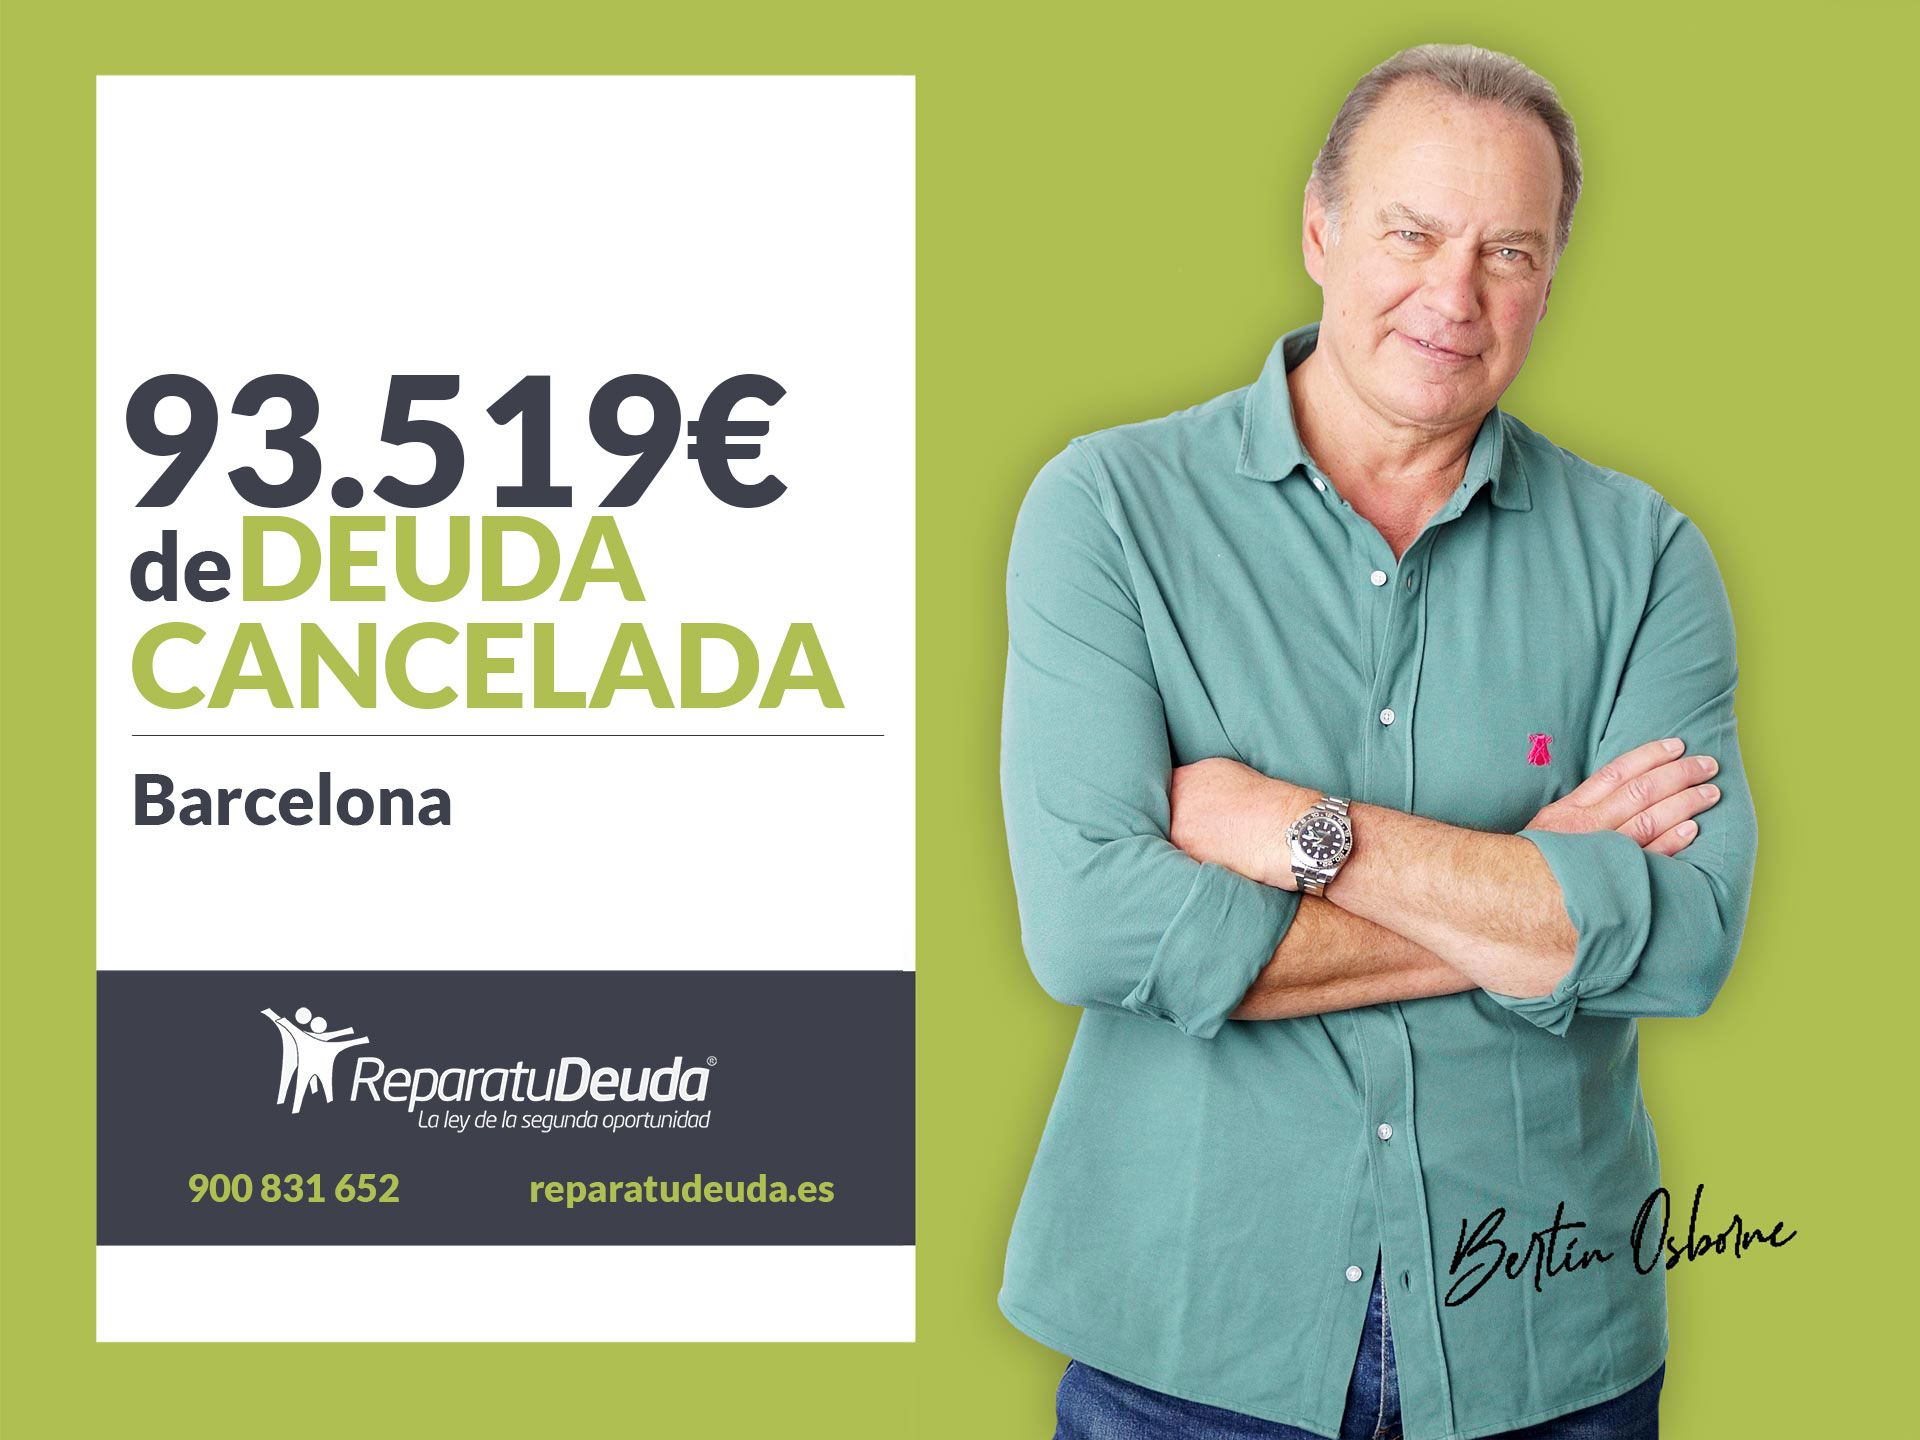 Repara tu Deuda Abogados cancela 93.519? en Barcelona (Catalunya) con la Ley de Segunda Oportunidad